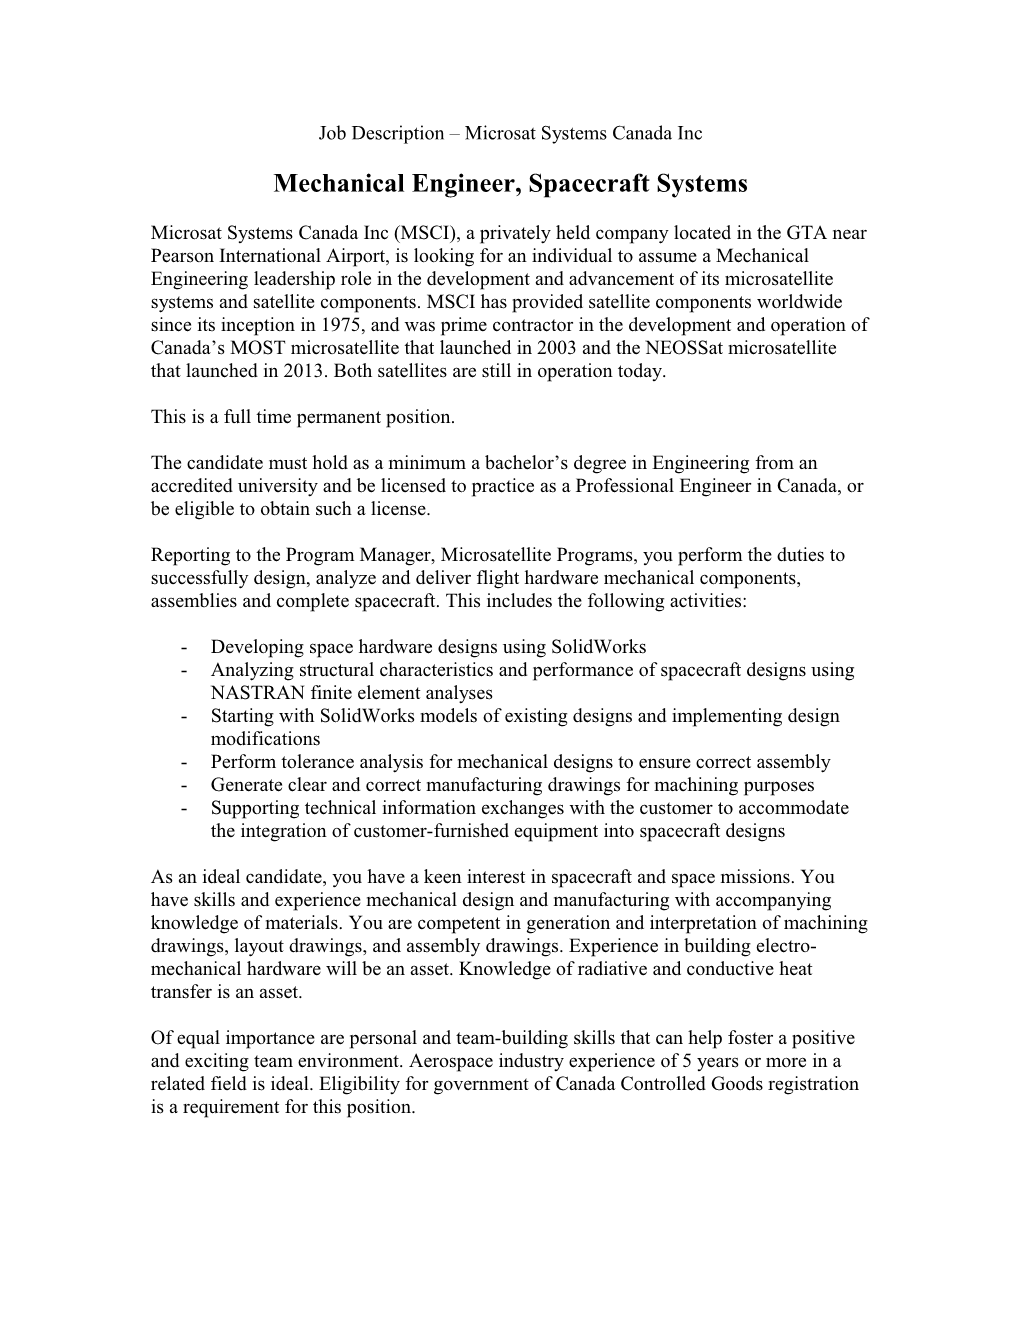 Job Description Microsat Systems Canada Inc